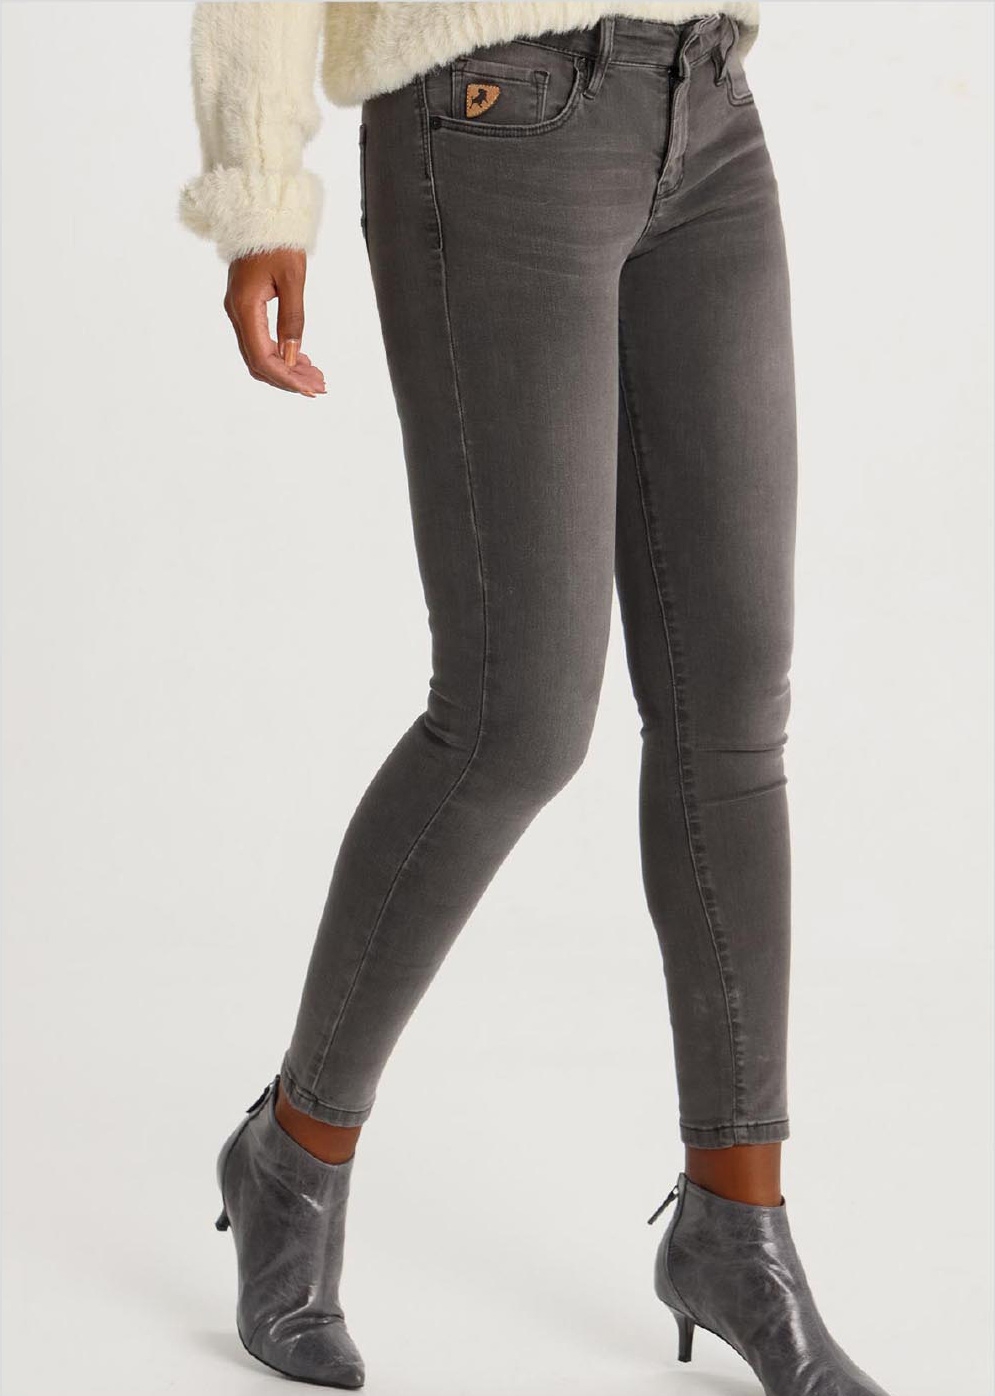 Lois pantalons texans de dona Lua ankle pitillo 20531/996 gris